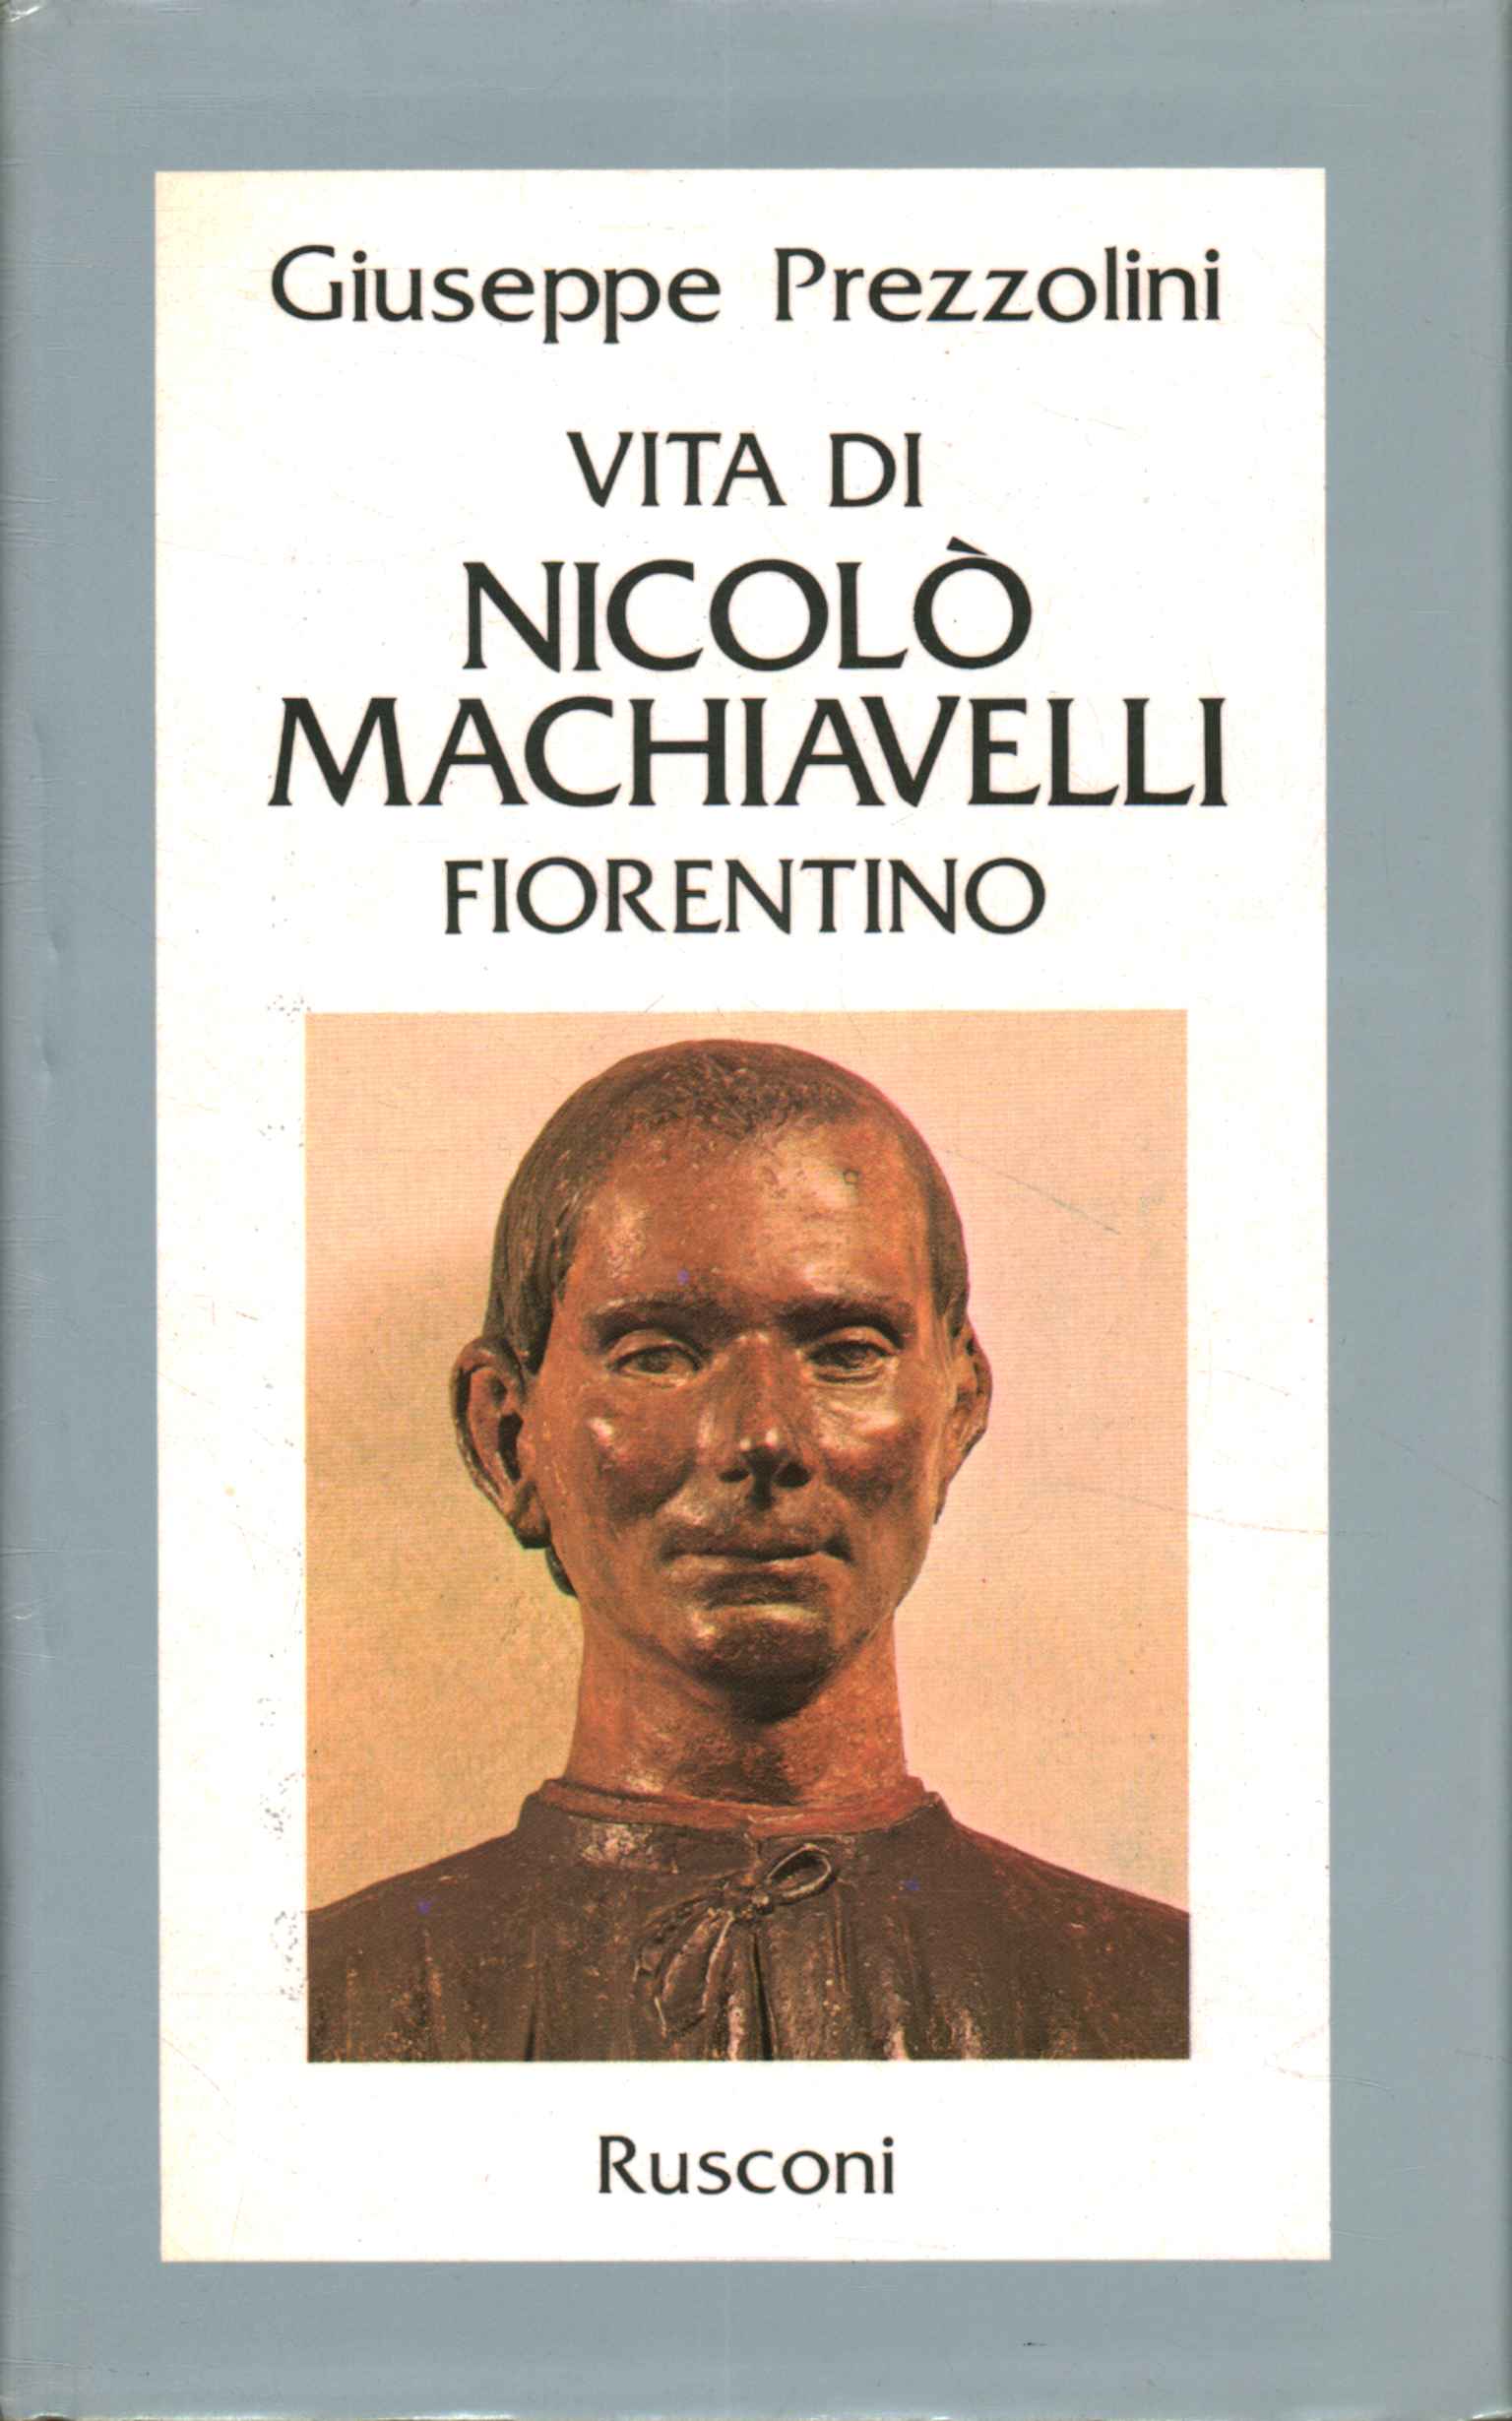 Leben von Nicolò Macchiavelli Fiorentin